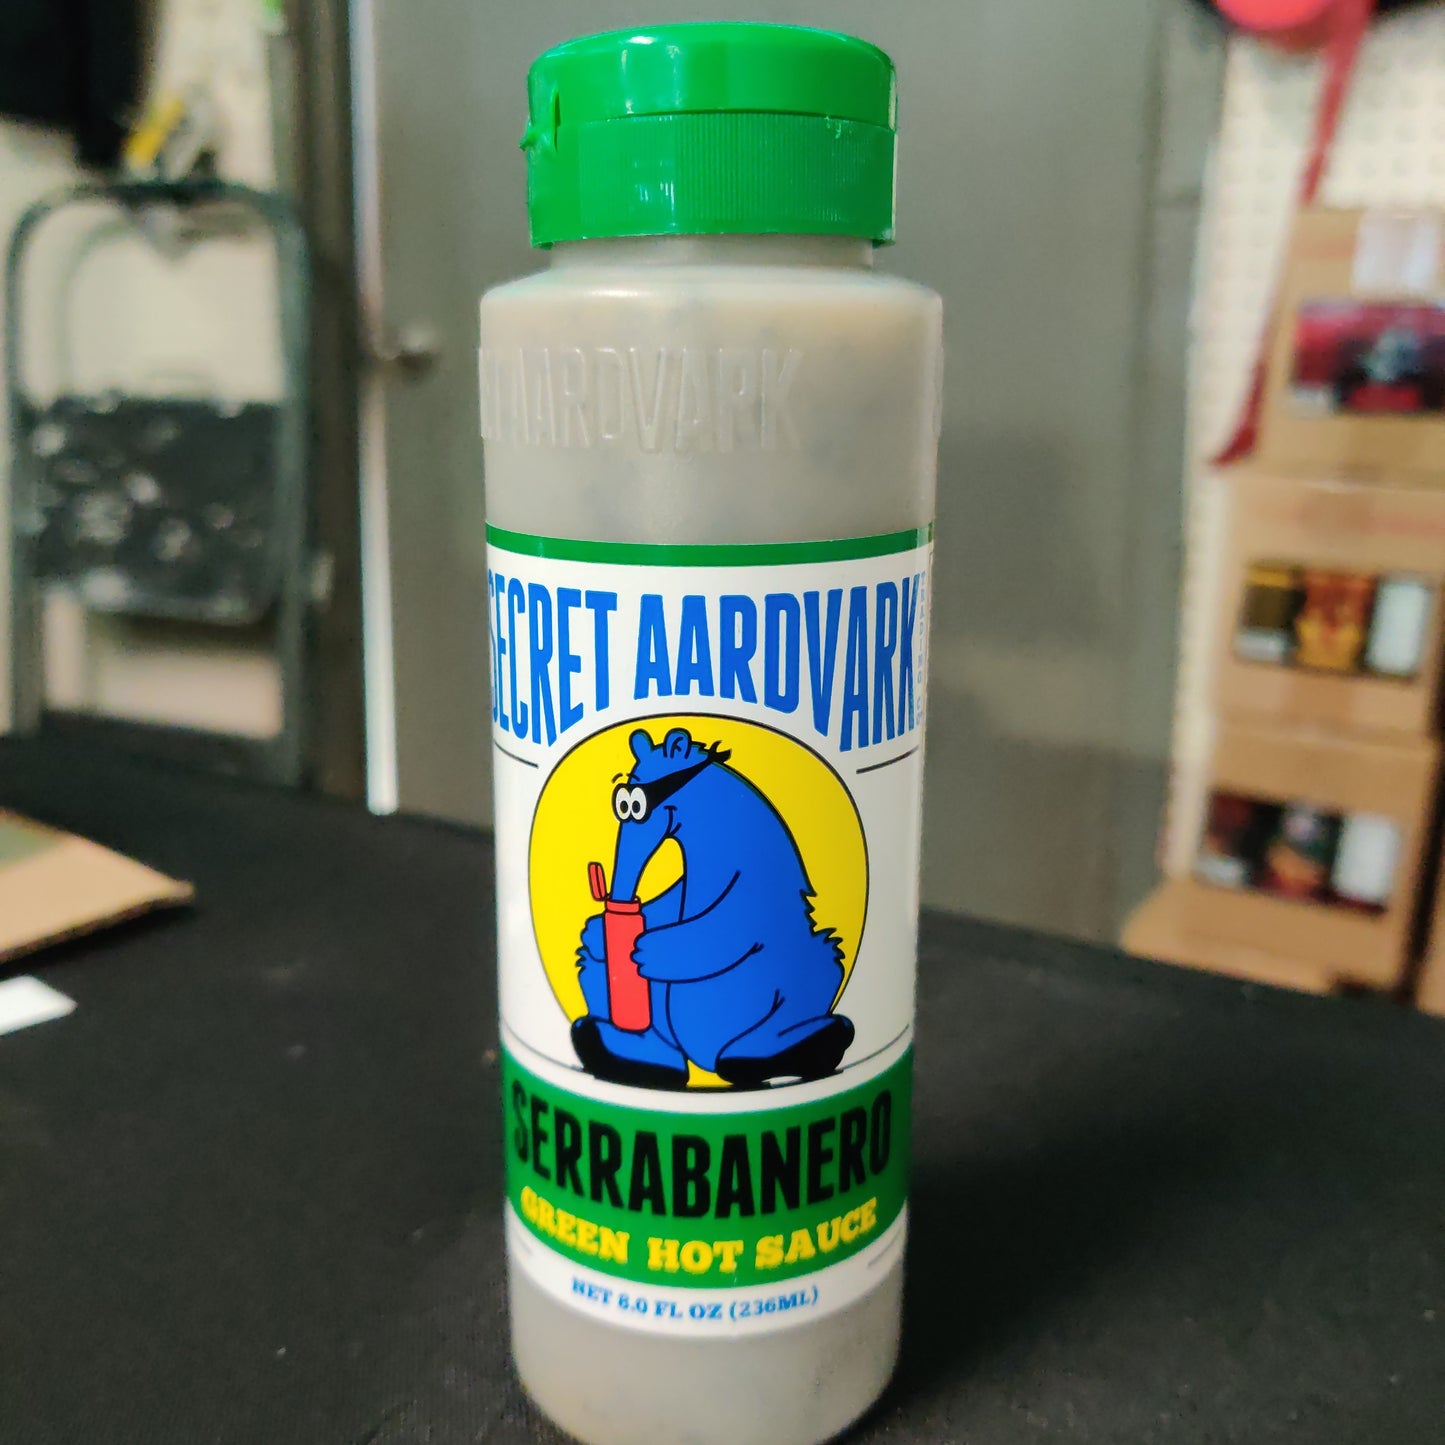 Secret Aardvark - Serrabanero Hot Sauce - Past date sale!